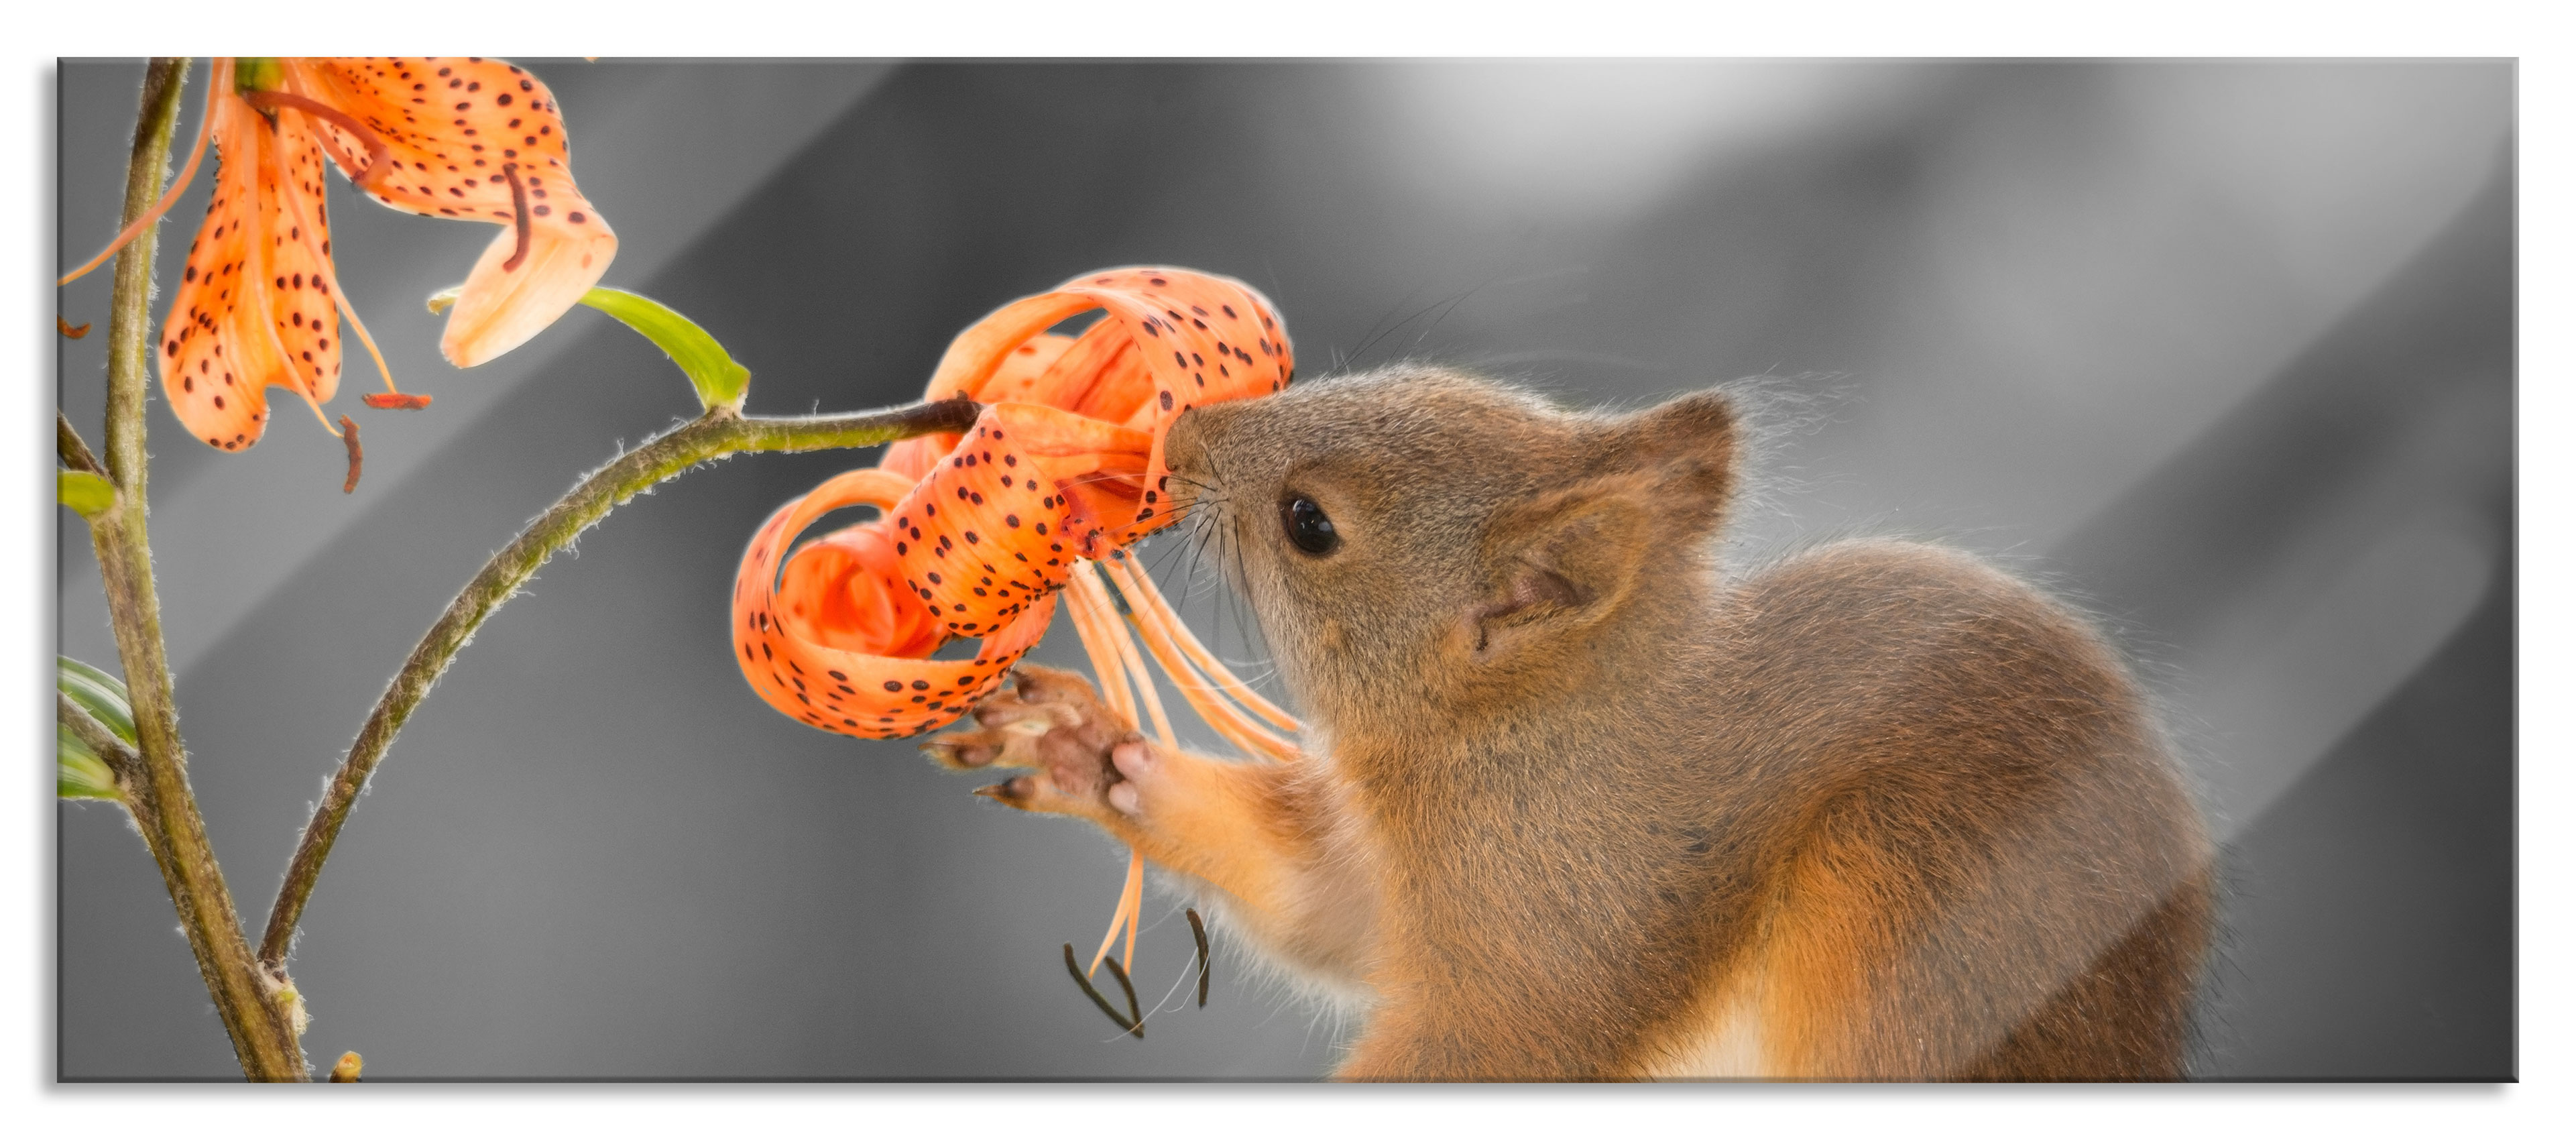 Wandhalterung an riecht Glasbild, Eichhörnchen inkl. Panorama einer Blume | eBay